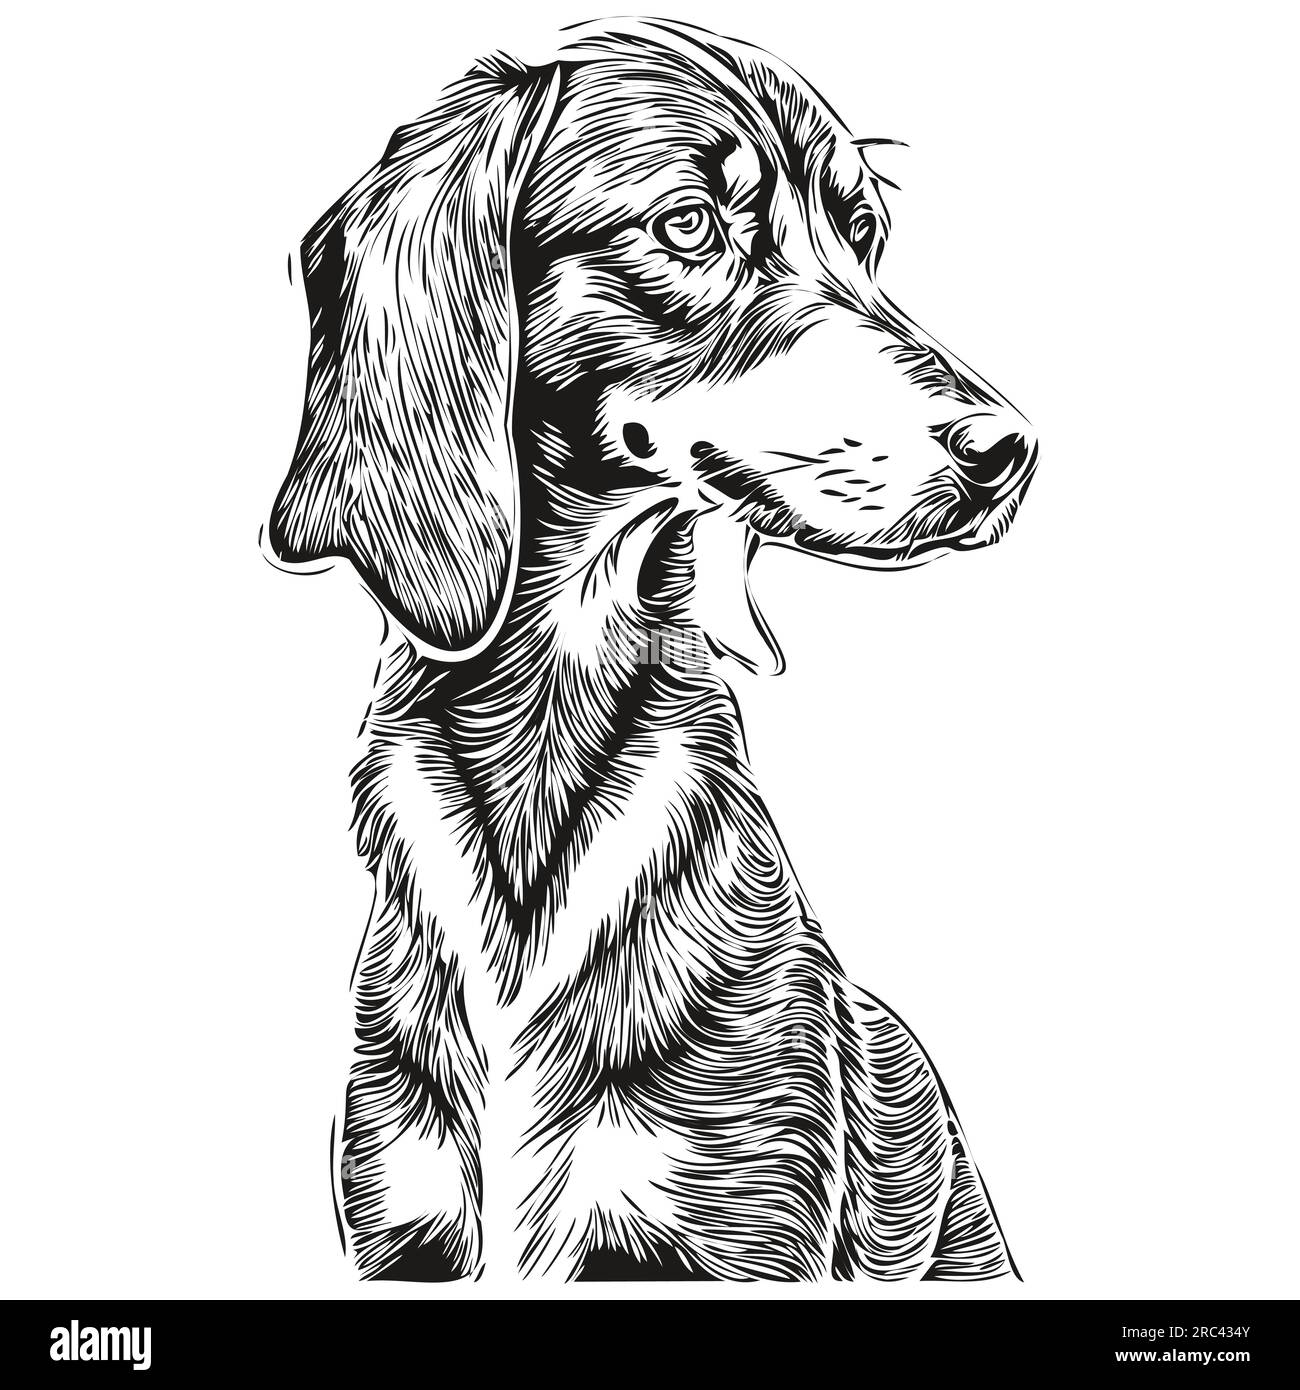 Dessin au trait de race de chien noir et tan Coonhound, clip art animal dessin à la main vecteur noir et blanc silhouette réaliste d'animal de compagnie Illustration de Vecteur